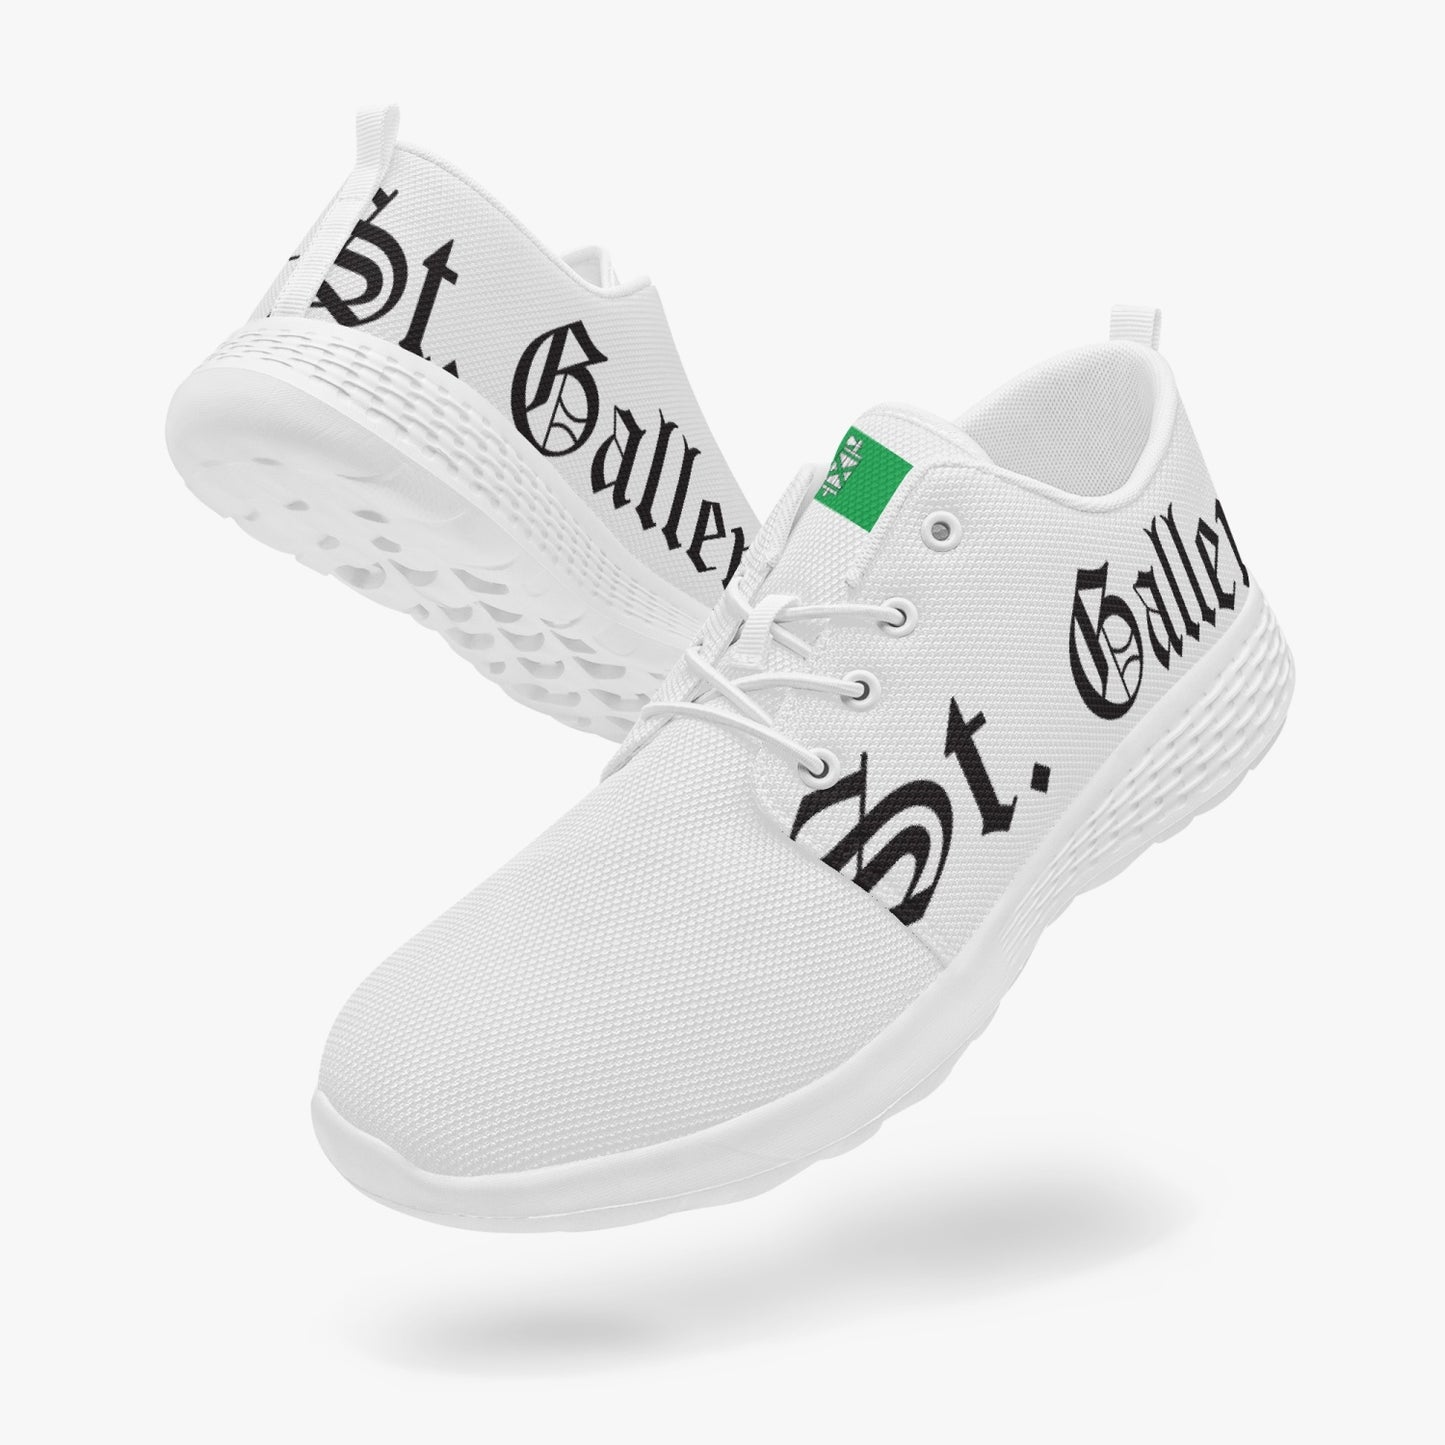 Chaussures de sport Saint-Gall